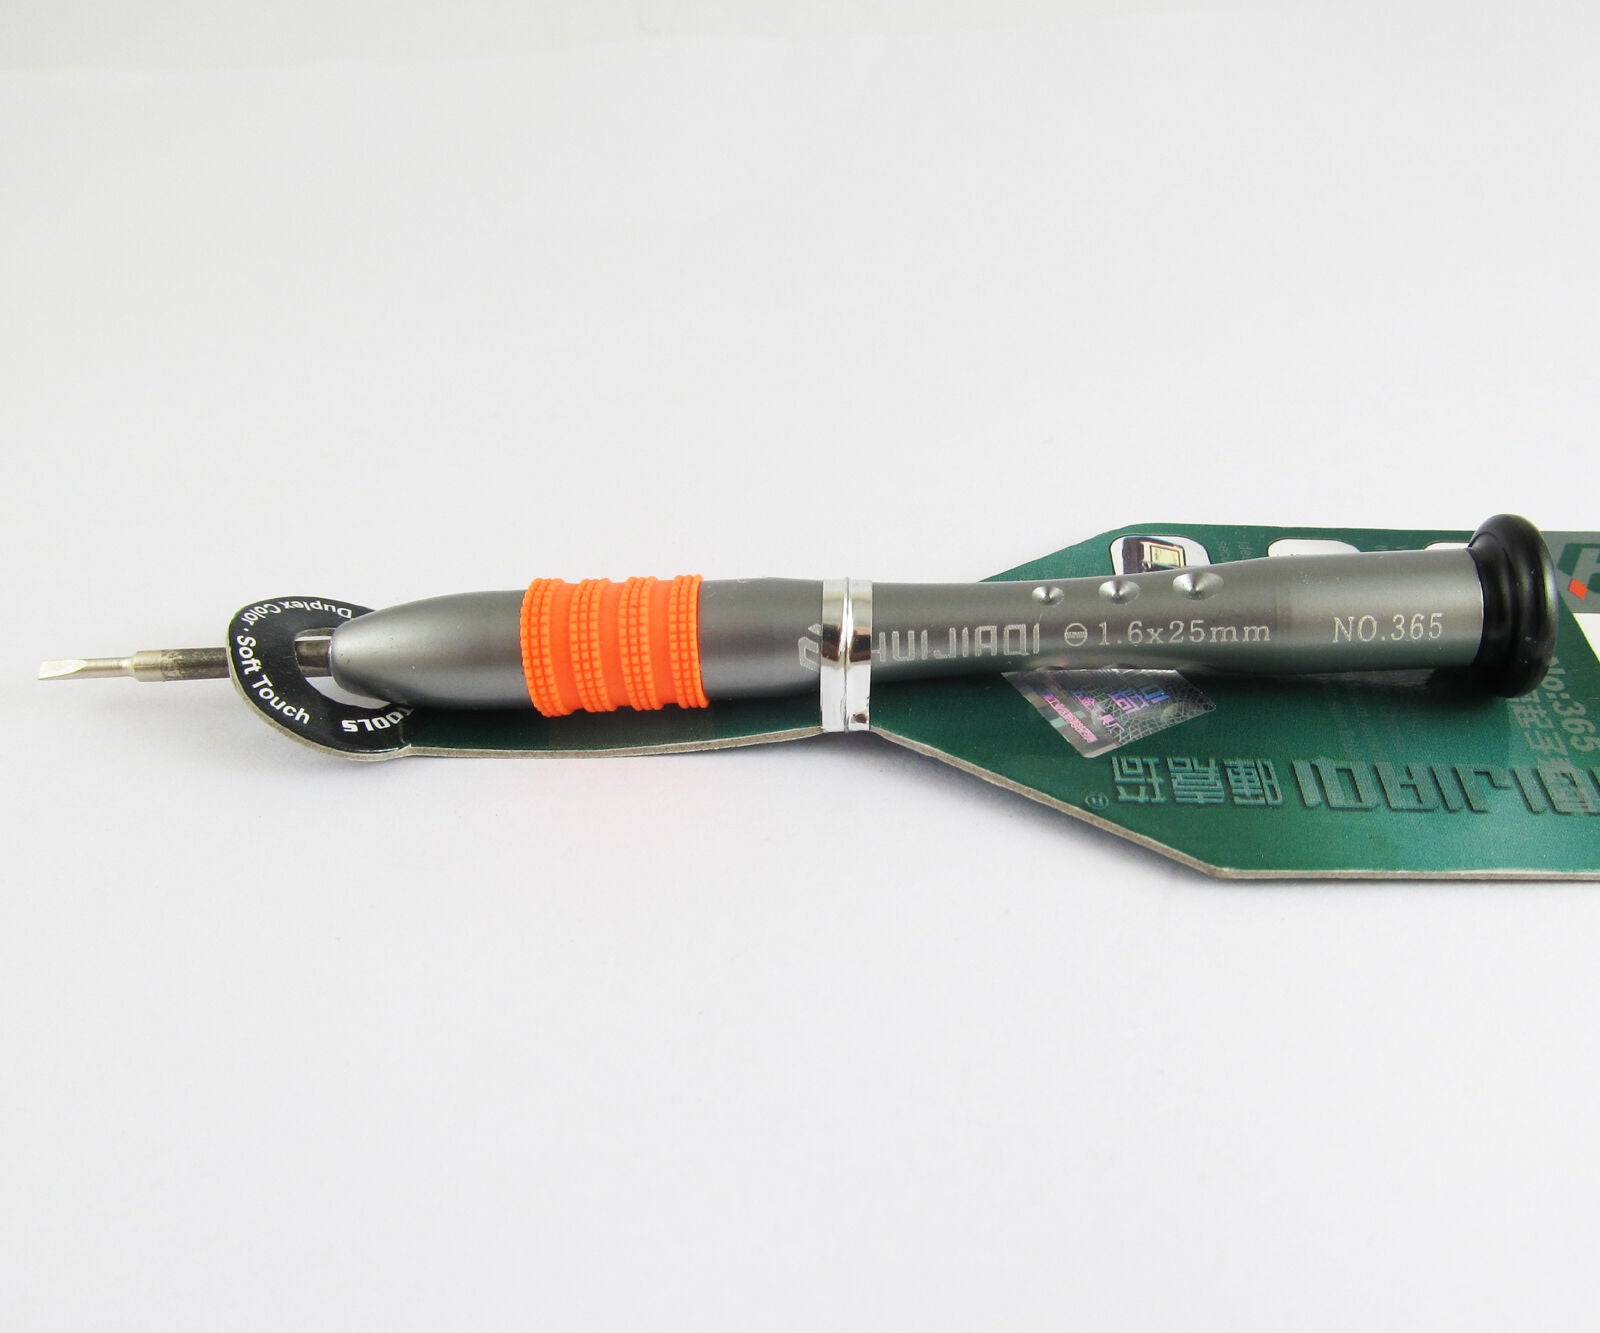 10pcs 1.6x25mm HUIJIAQI Zinc Alloy CR-V Screwdriver slotted screwdriver Tools